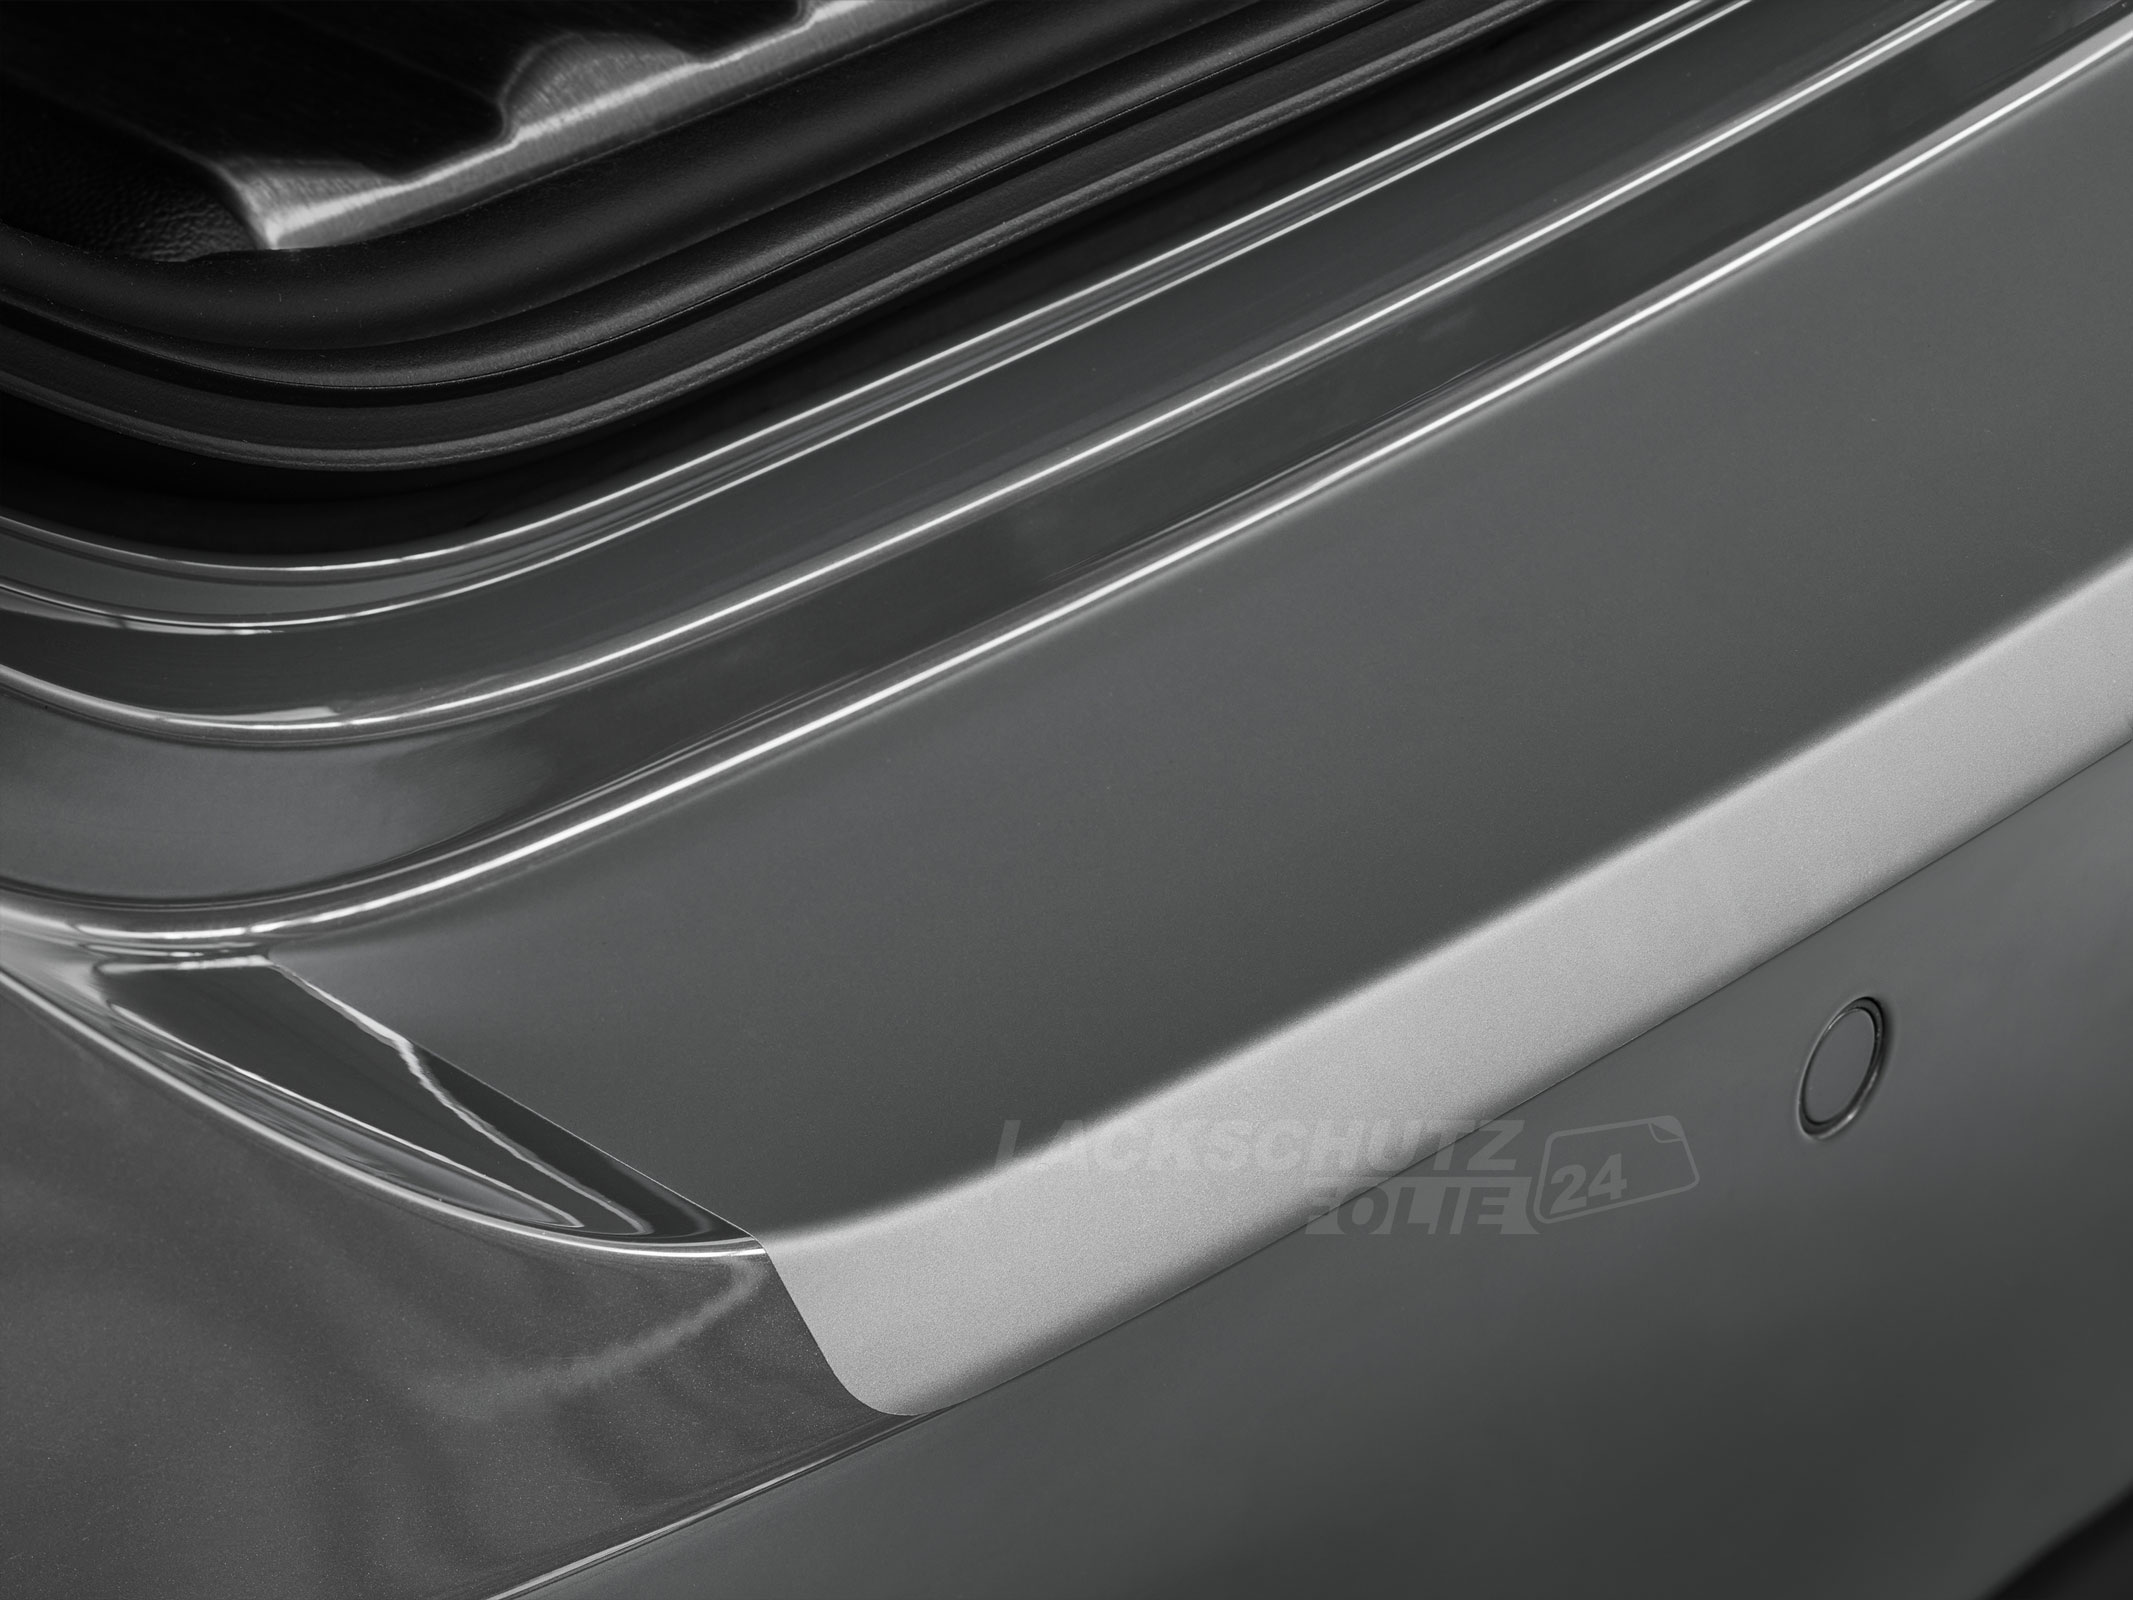 Ladekantenschutzfolie - Transparent Glatt MATT 110 µm stark  für Suzuki Ignis (III) ab BJ 01/2016 + Facelift